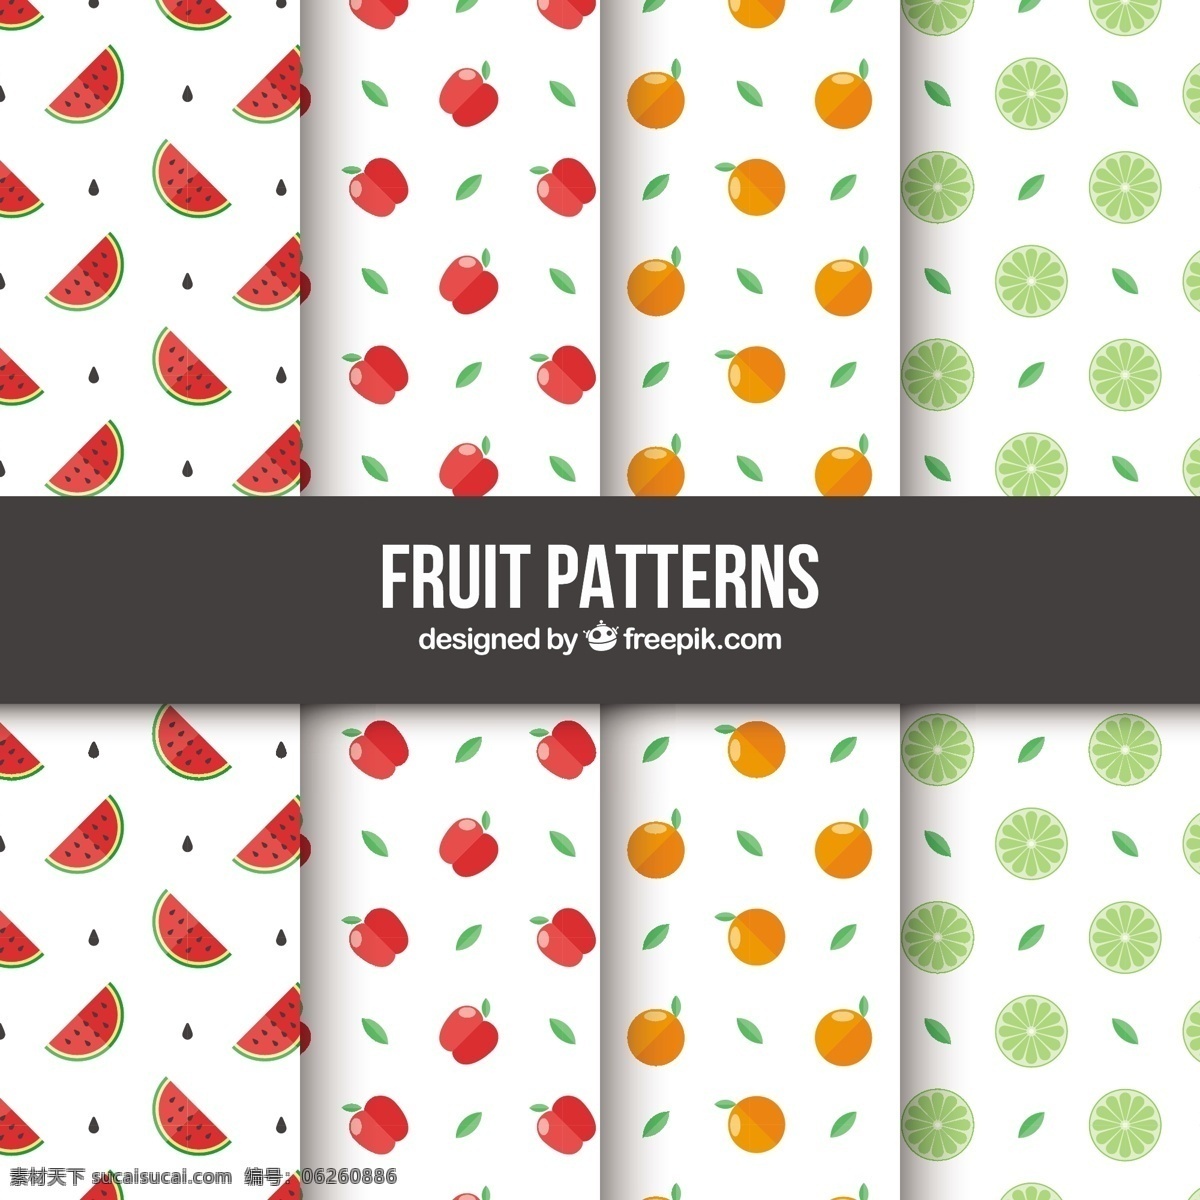 四 种 扁 果 型 选择 背景 图案 食物 水果 颜色 橙色 苹果 热带 平 装饰 丰富多彩 橙色背景 无缝模式 健康 平面设计